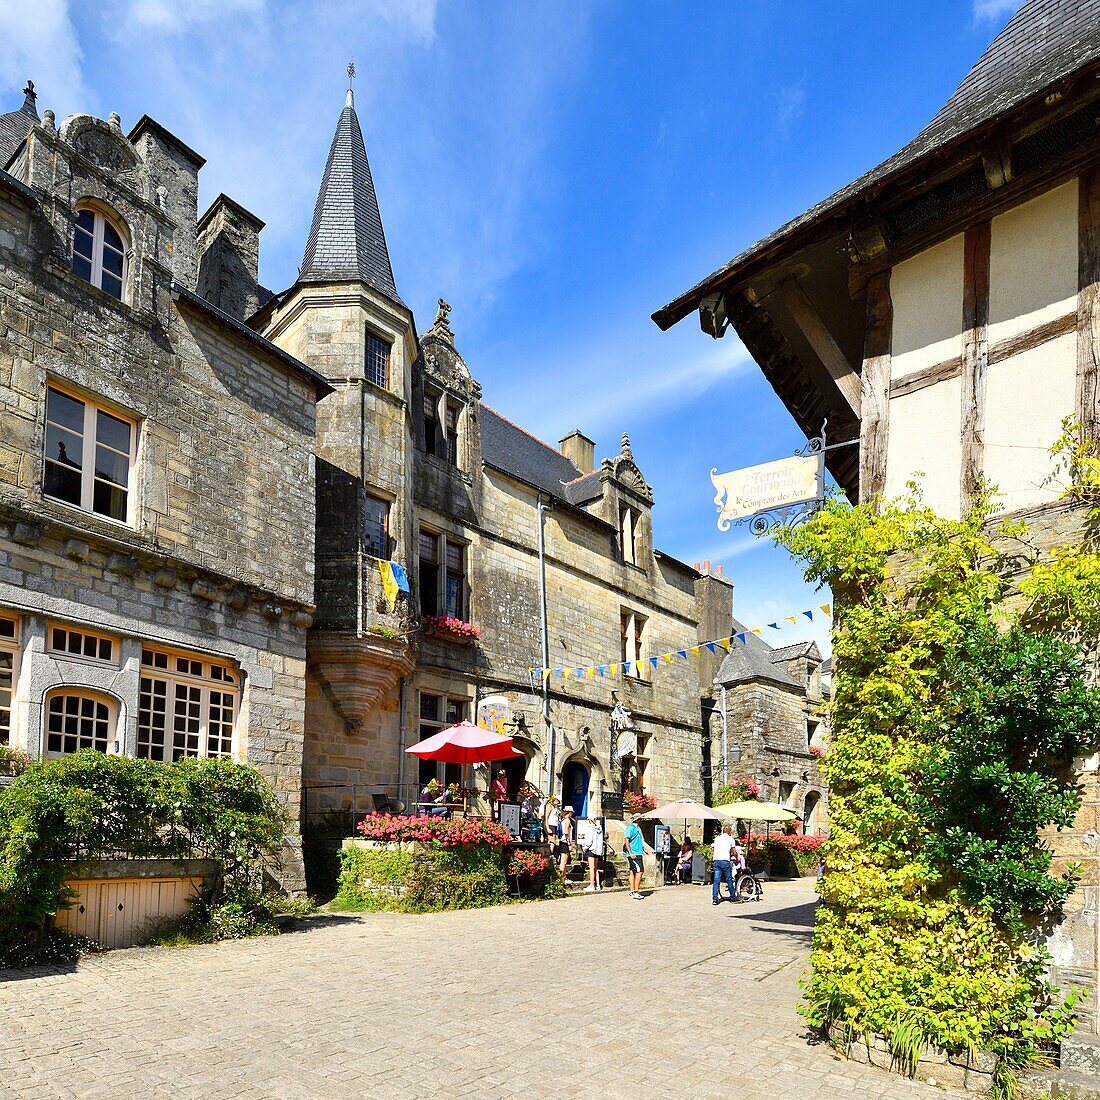 Frankreich, Morbihan, Rochefort en Terre, ausgezeichnet als les plus beaux villages de France (Die schönsten Dörfer Frankreichs), Place du Puits